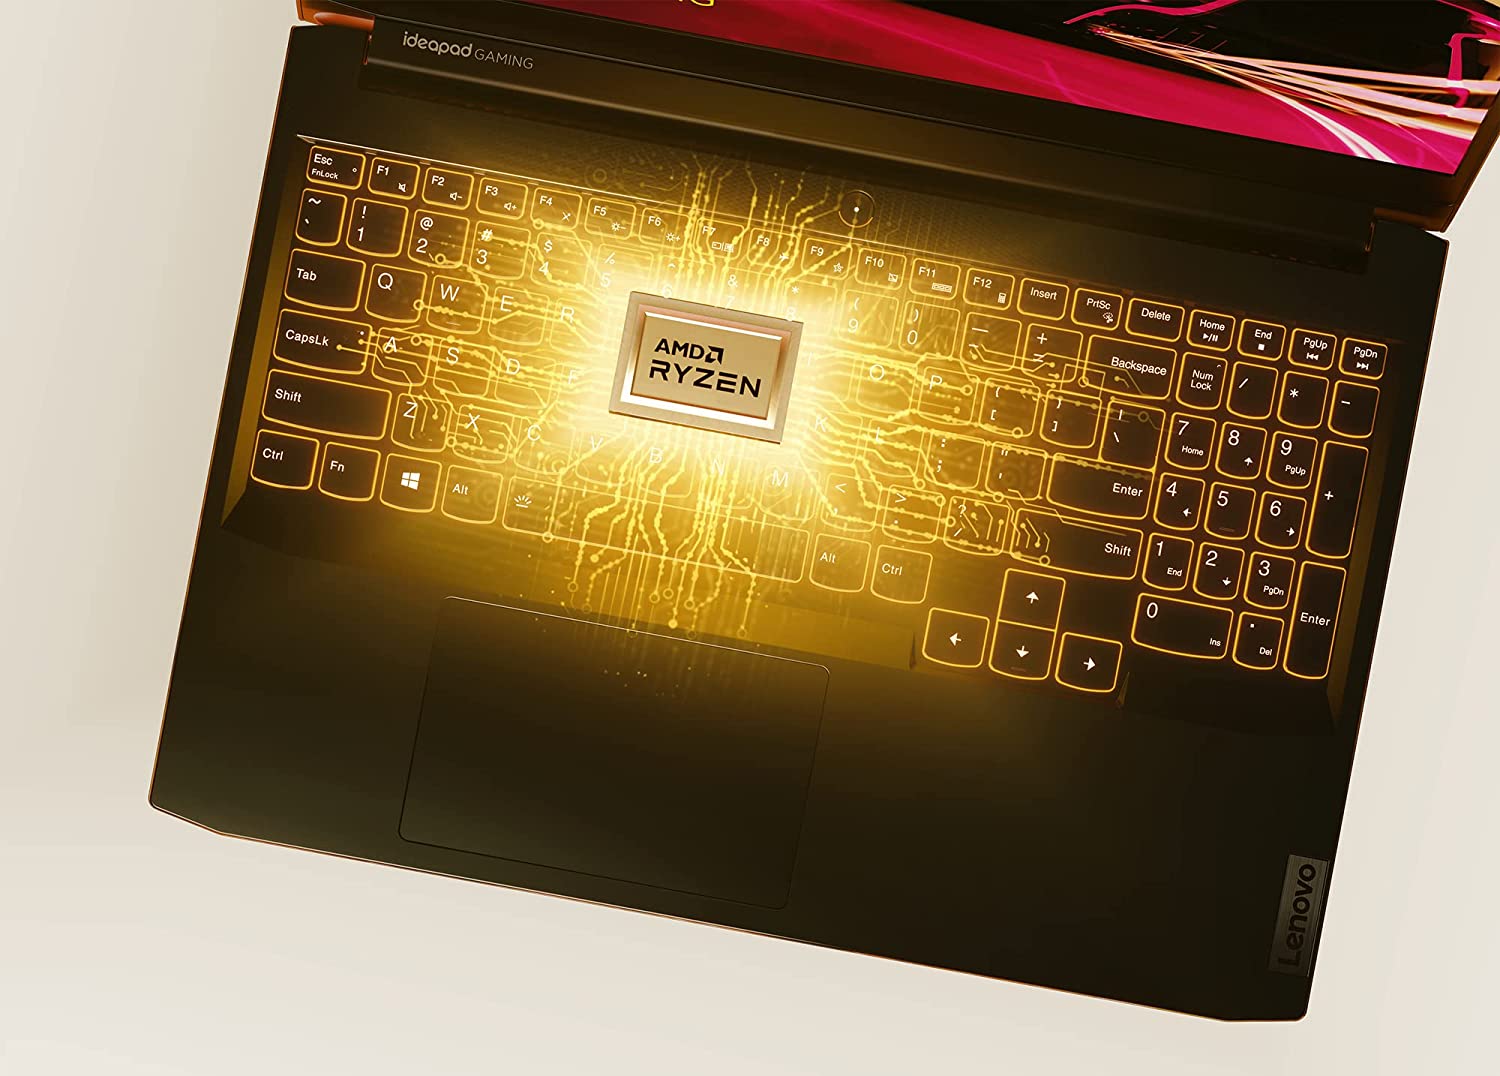 O plynulý chod notebooku Lenovo IdeaPad Gaming 3 se stará 6jádrový procesor AMD Ryzen 5 5600H, který nabízí maximální takt až 4,2 GHz v režimu Precision Boost 2.